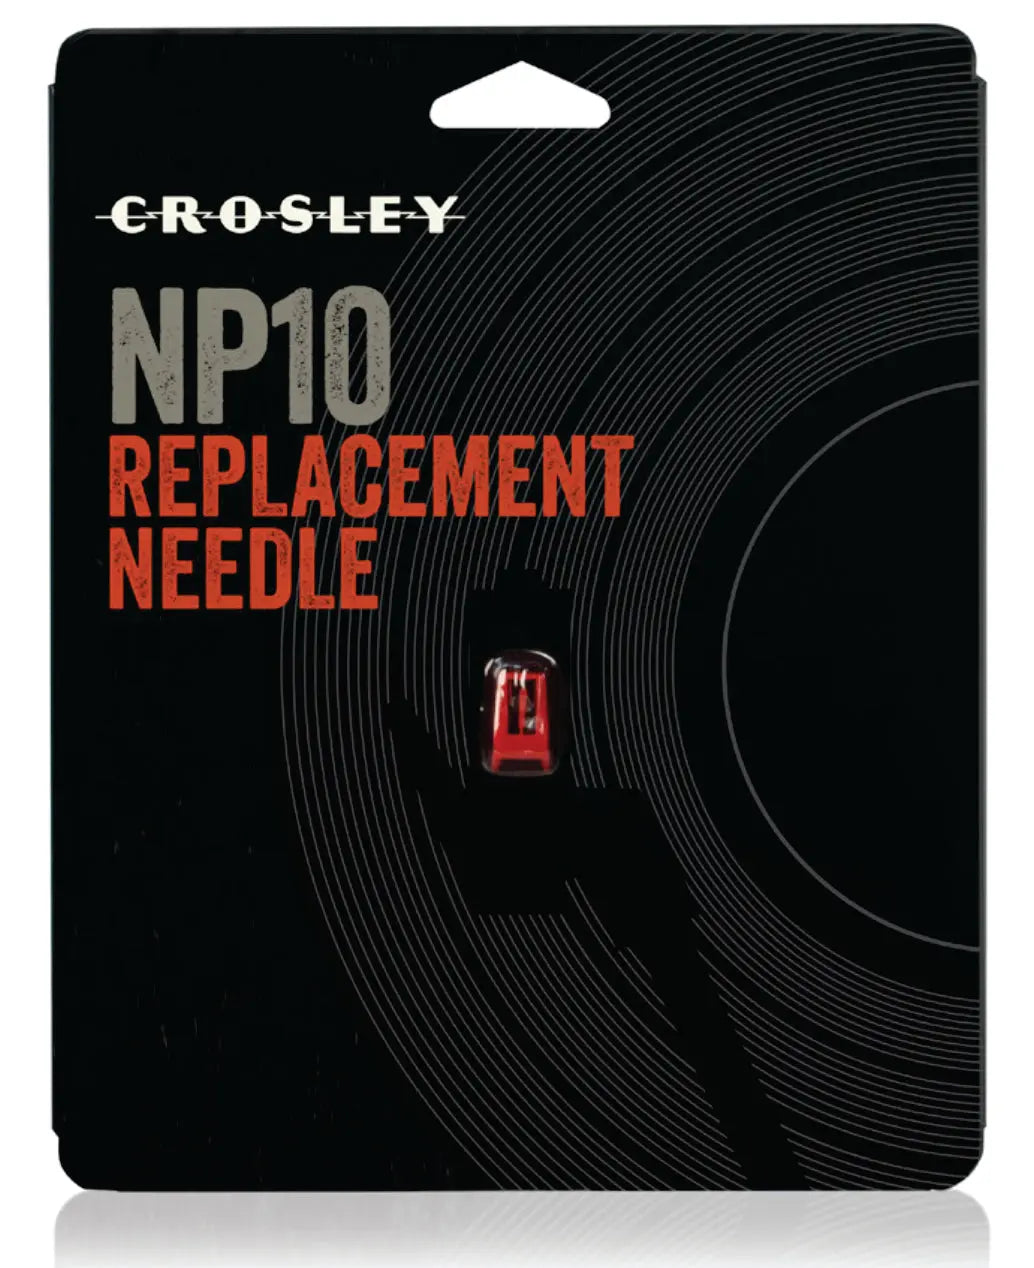 Replacement needle | NP10 Crosley Radio Europe